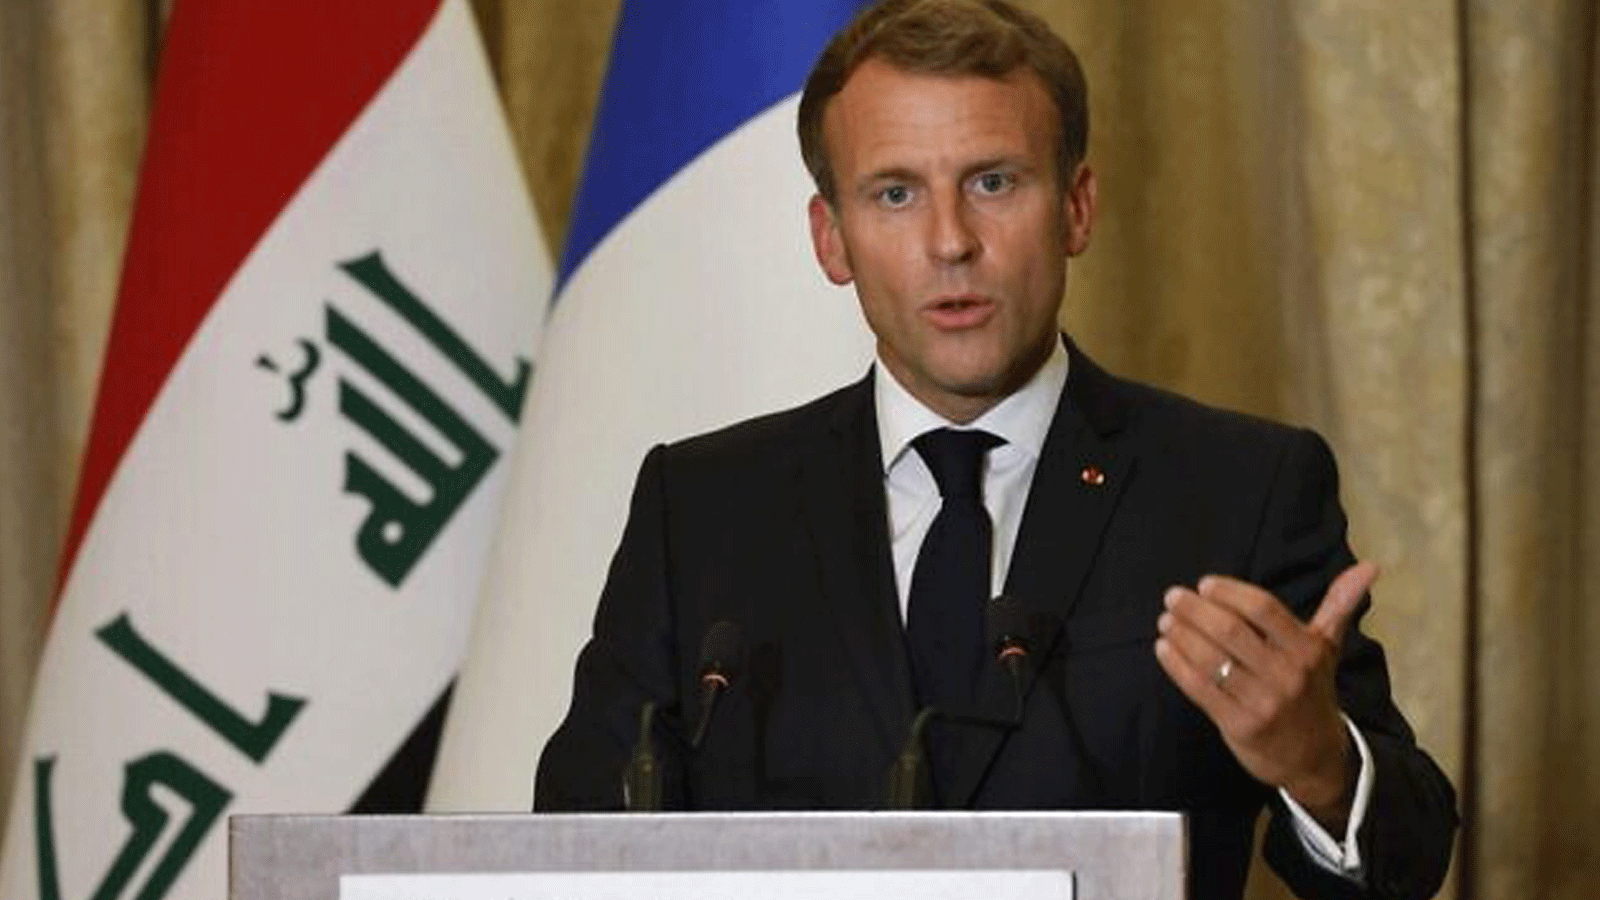 الرئيس الفرنسي إيمانويل ماكرون يعقد مؤتمراً صحفياً في بيت الضيافة بالعاصمة العراقية بغداد. في 28 آب/ أغسطس 2021